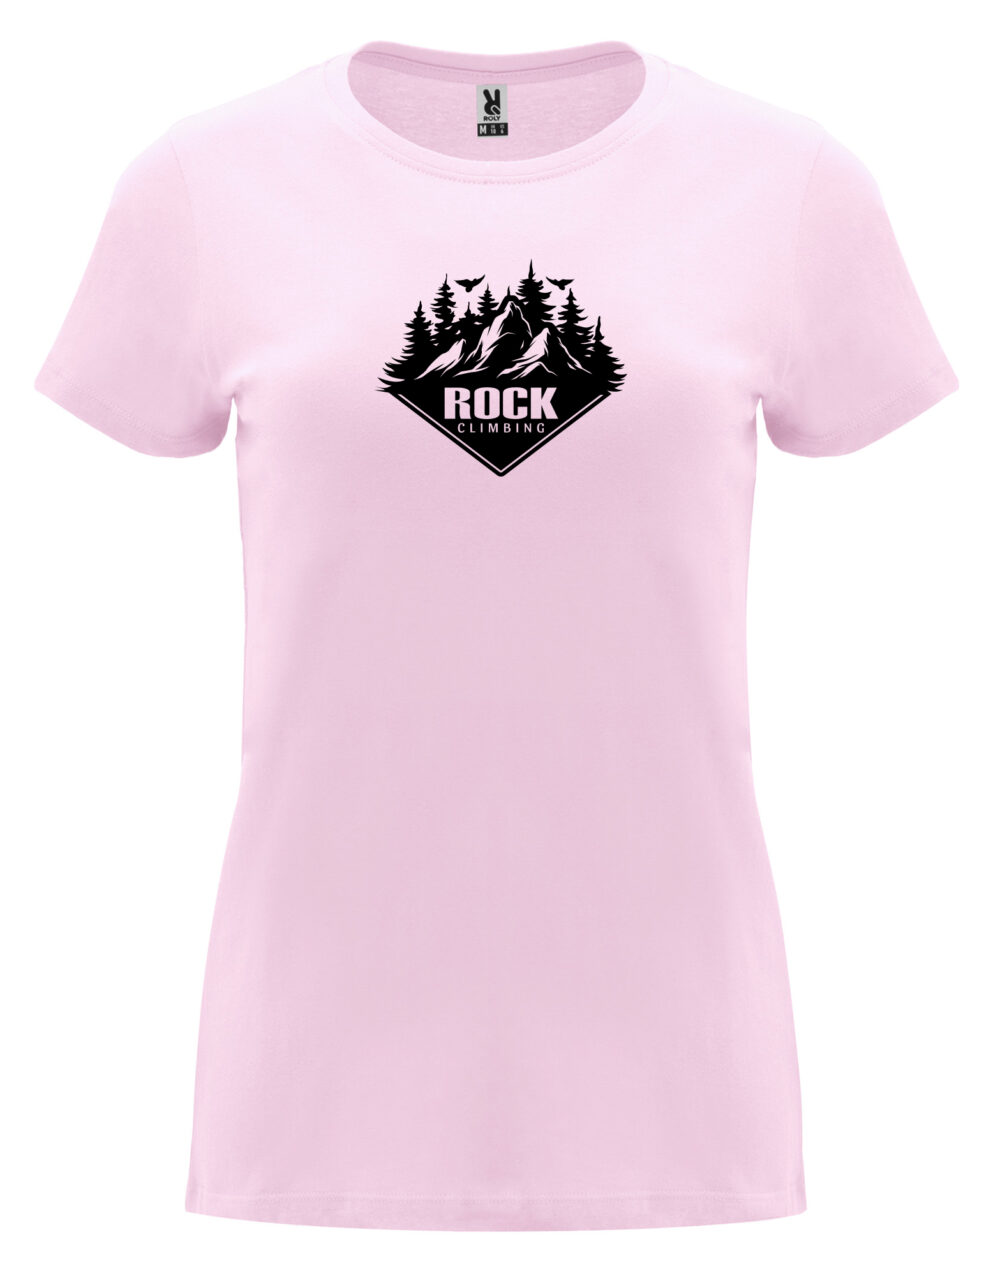 Dámské tričko s potiskem Rock climbing světle růžová